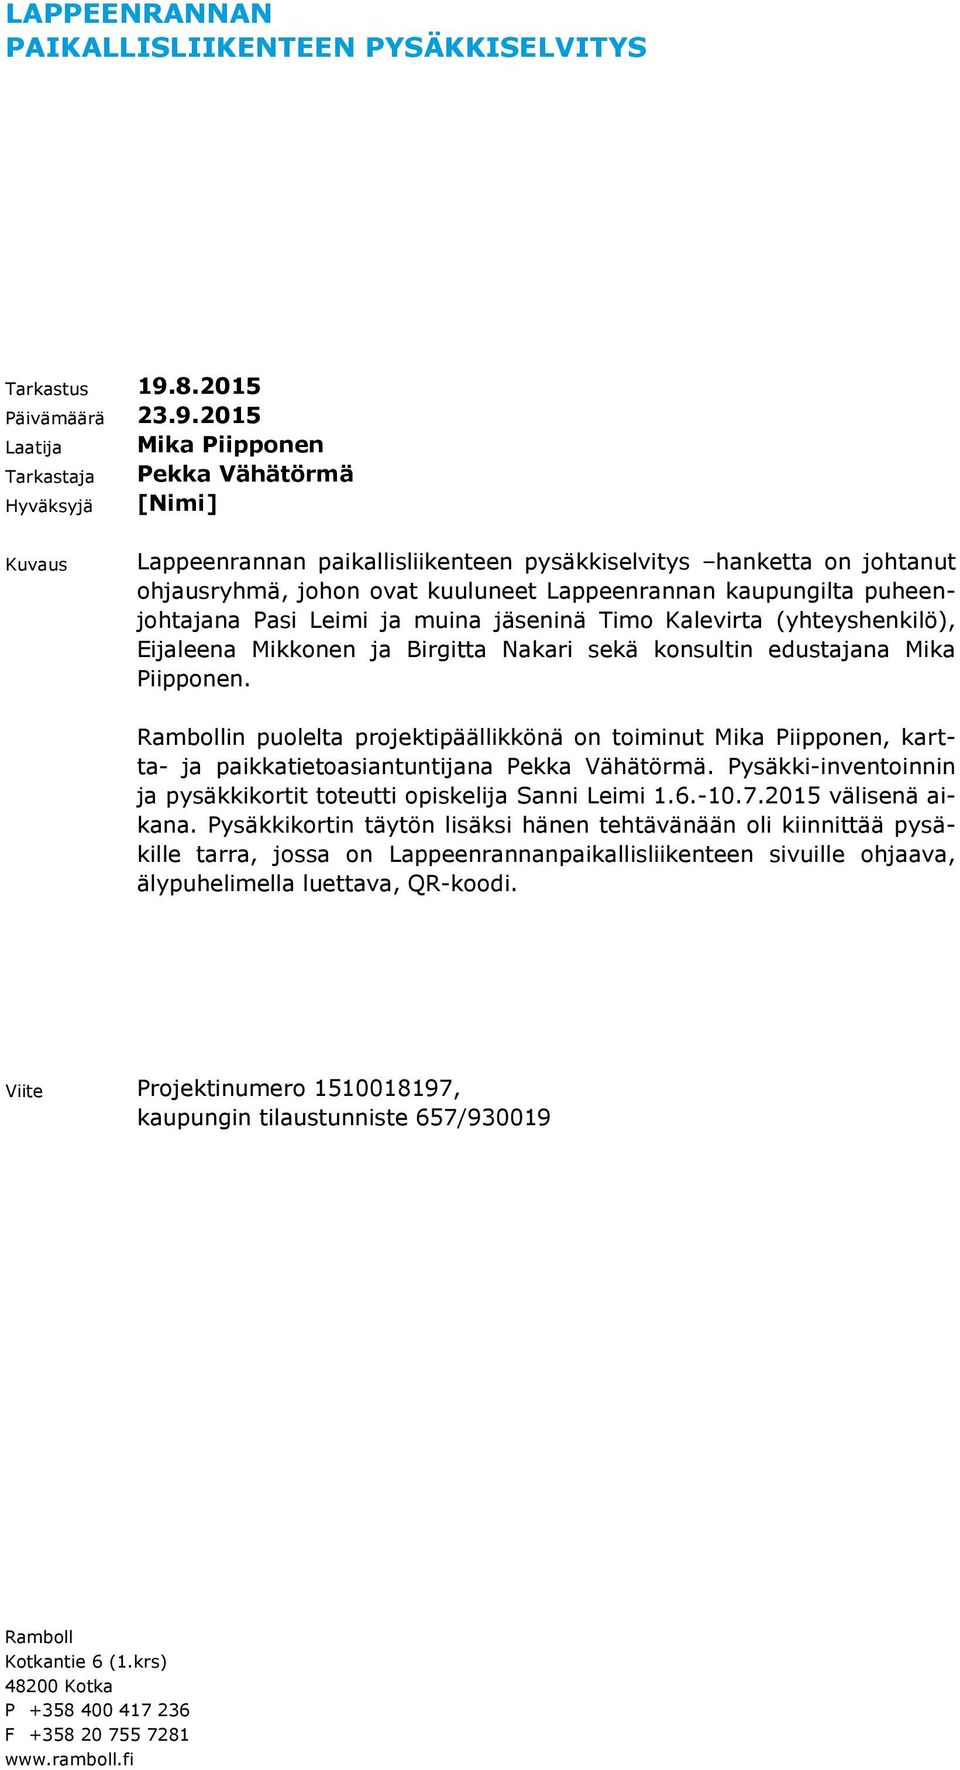 2015 Laatija Tarkastaja Hyväksyjä Mika Piipponen Pekka Vähätörmä [Nimi] Kuvaus Lappeenrannan paikallisliikenteen pysäkkiselvitys hanketta on johtanut ohjausryhmä, johon ovat kuuluneet Lappeenrannan